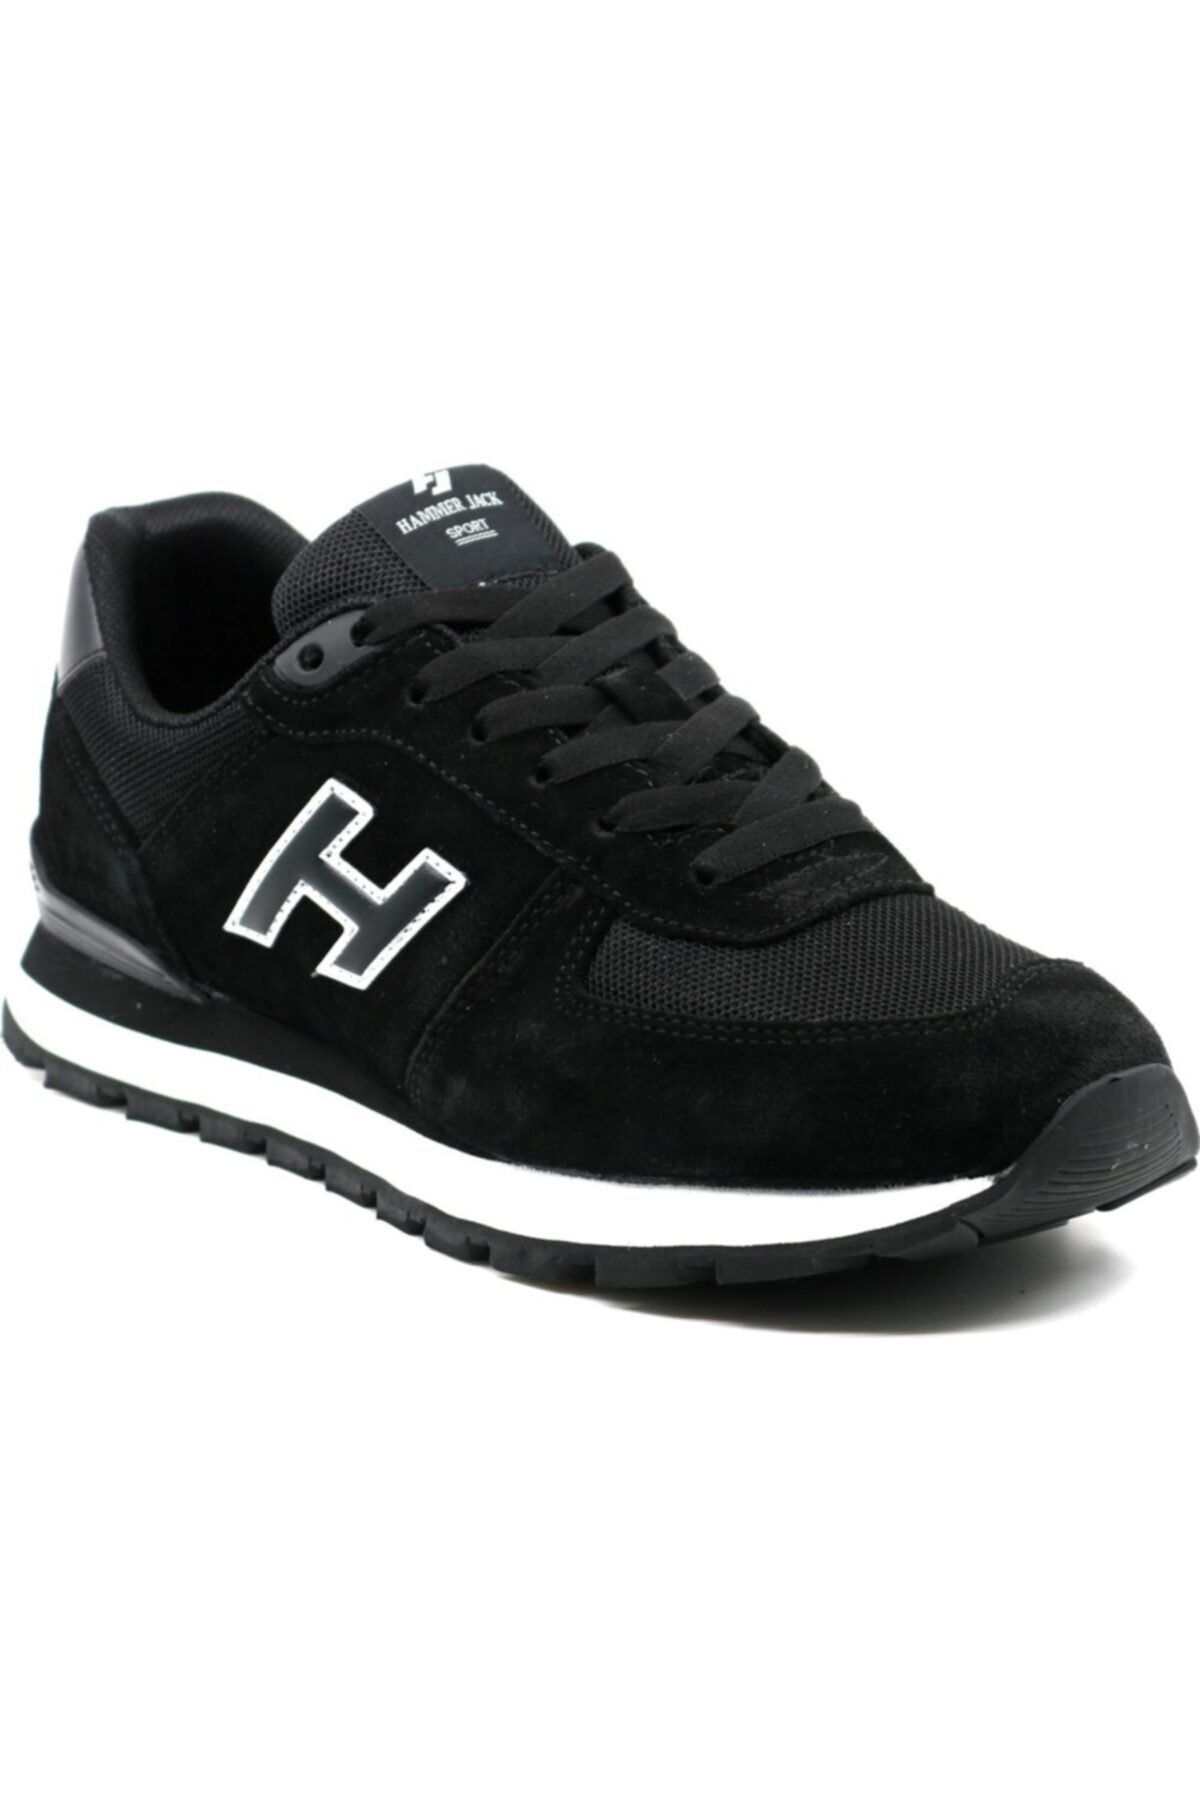 Hammer Jack Siyah-beyaz Bağlı Sneaker